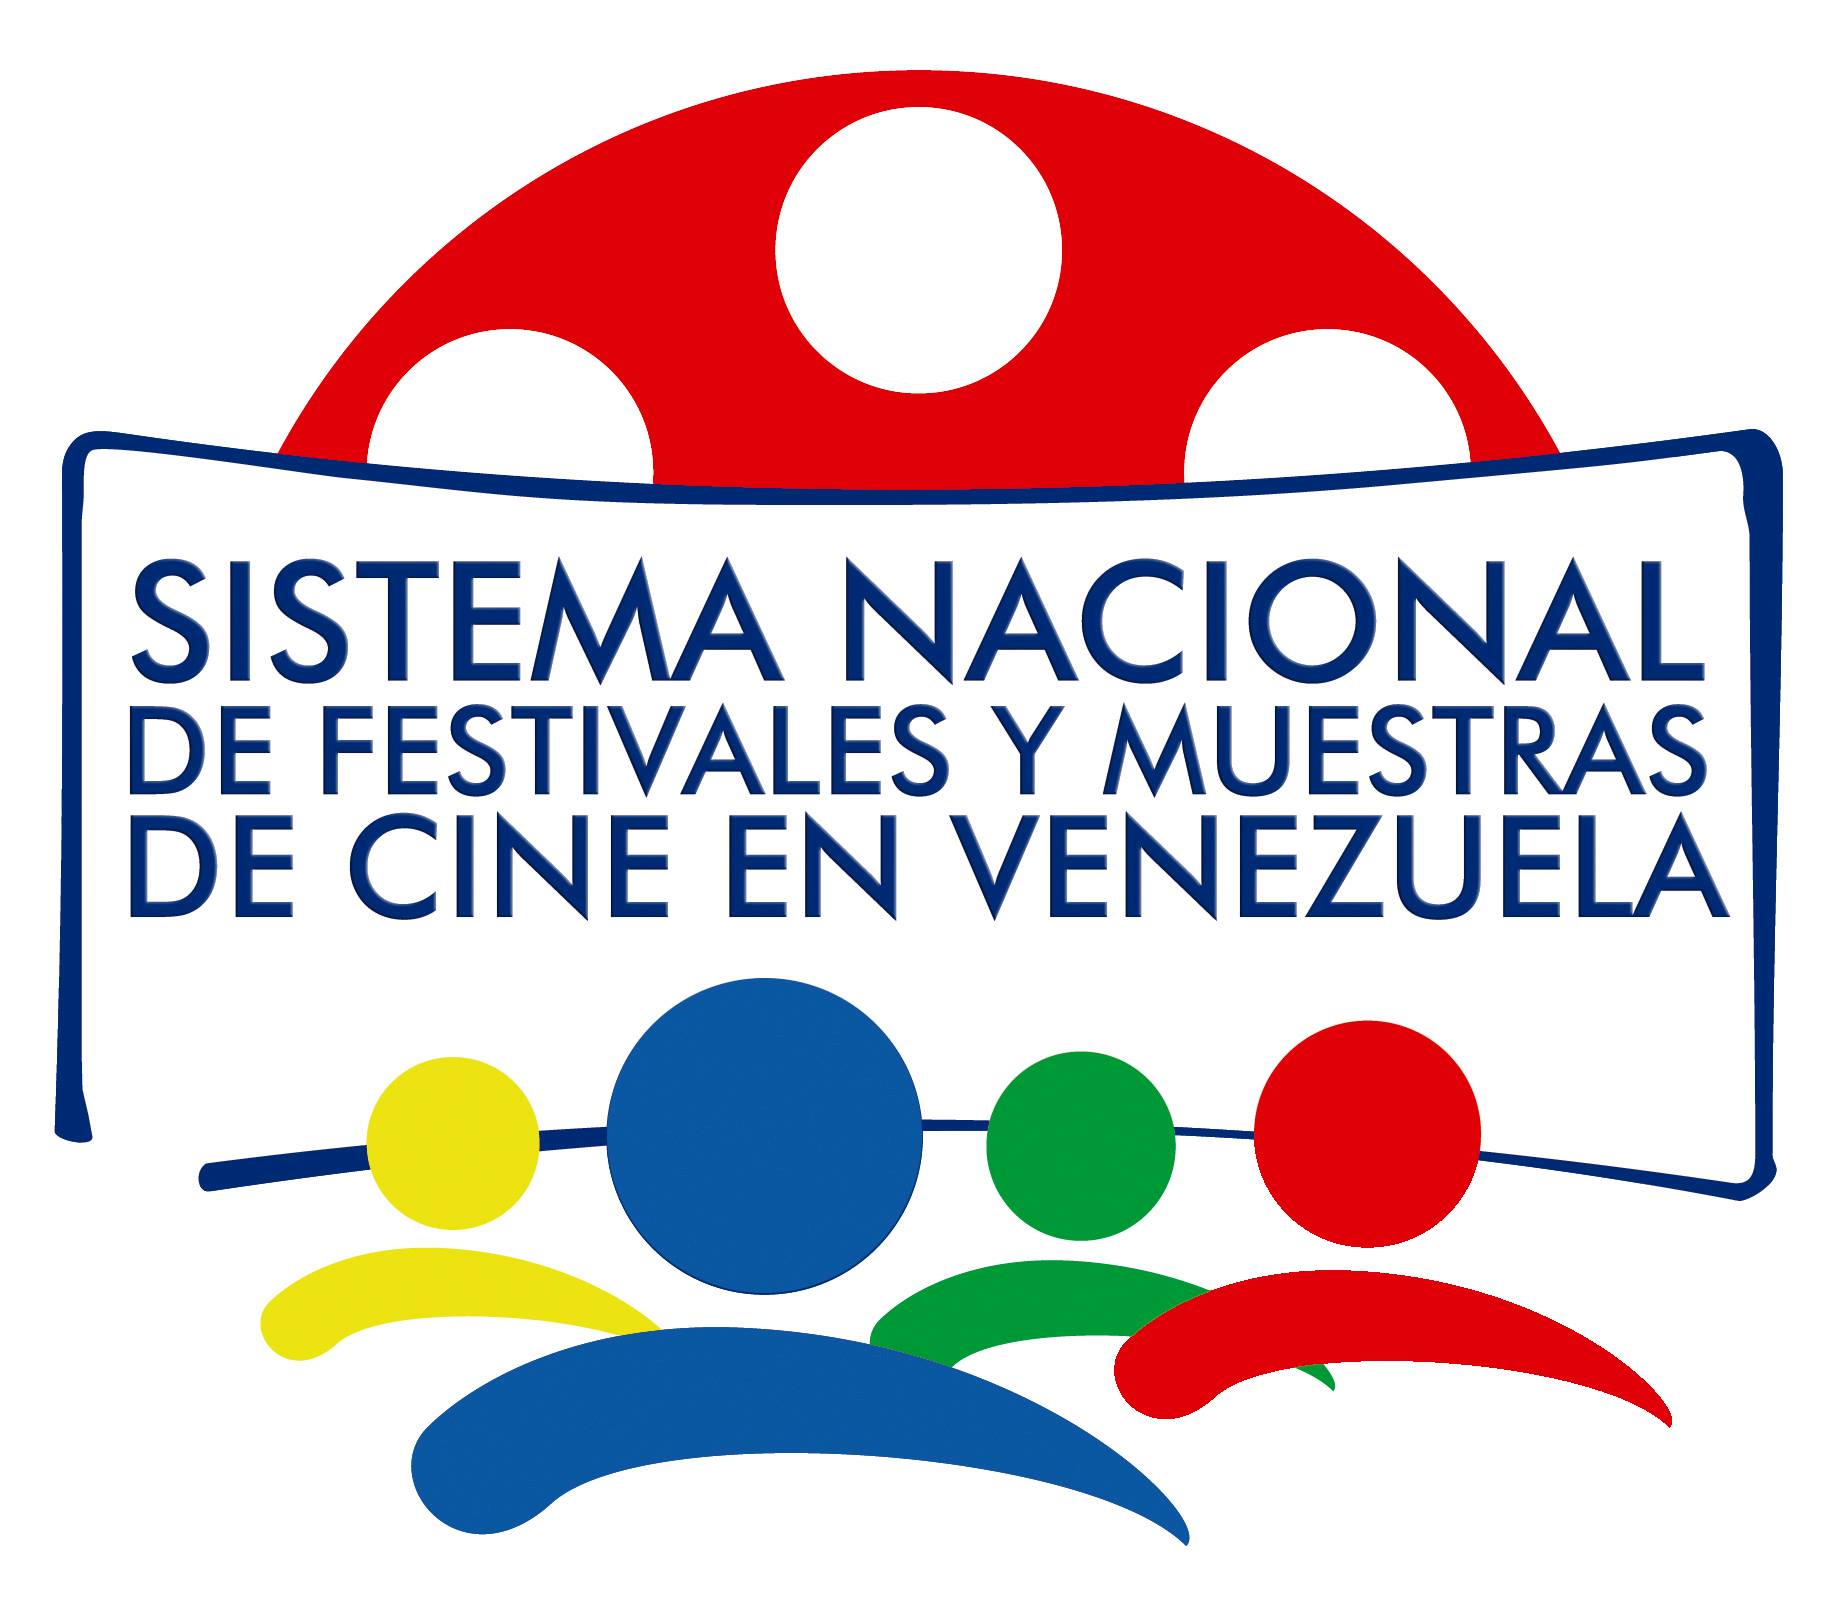 Sistema Nacional de Festivales y Muestras de Cine en Venezuela